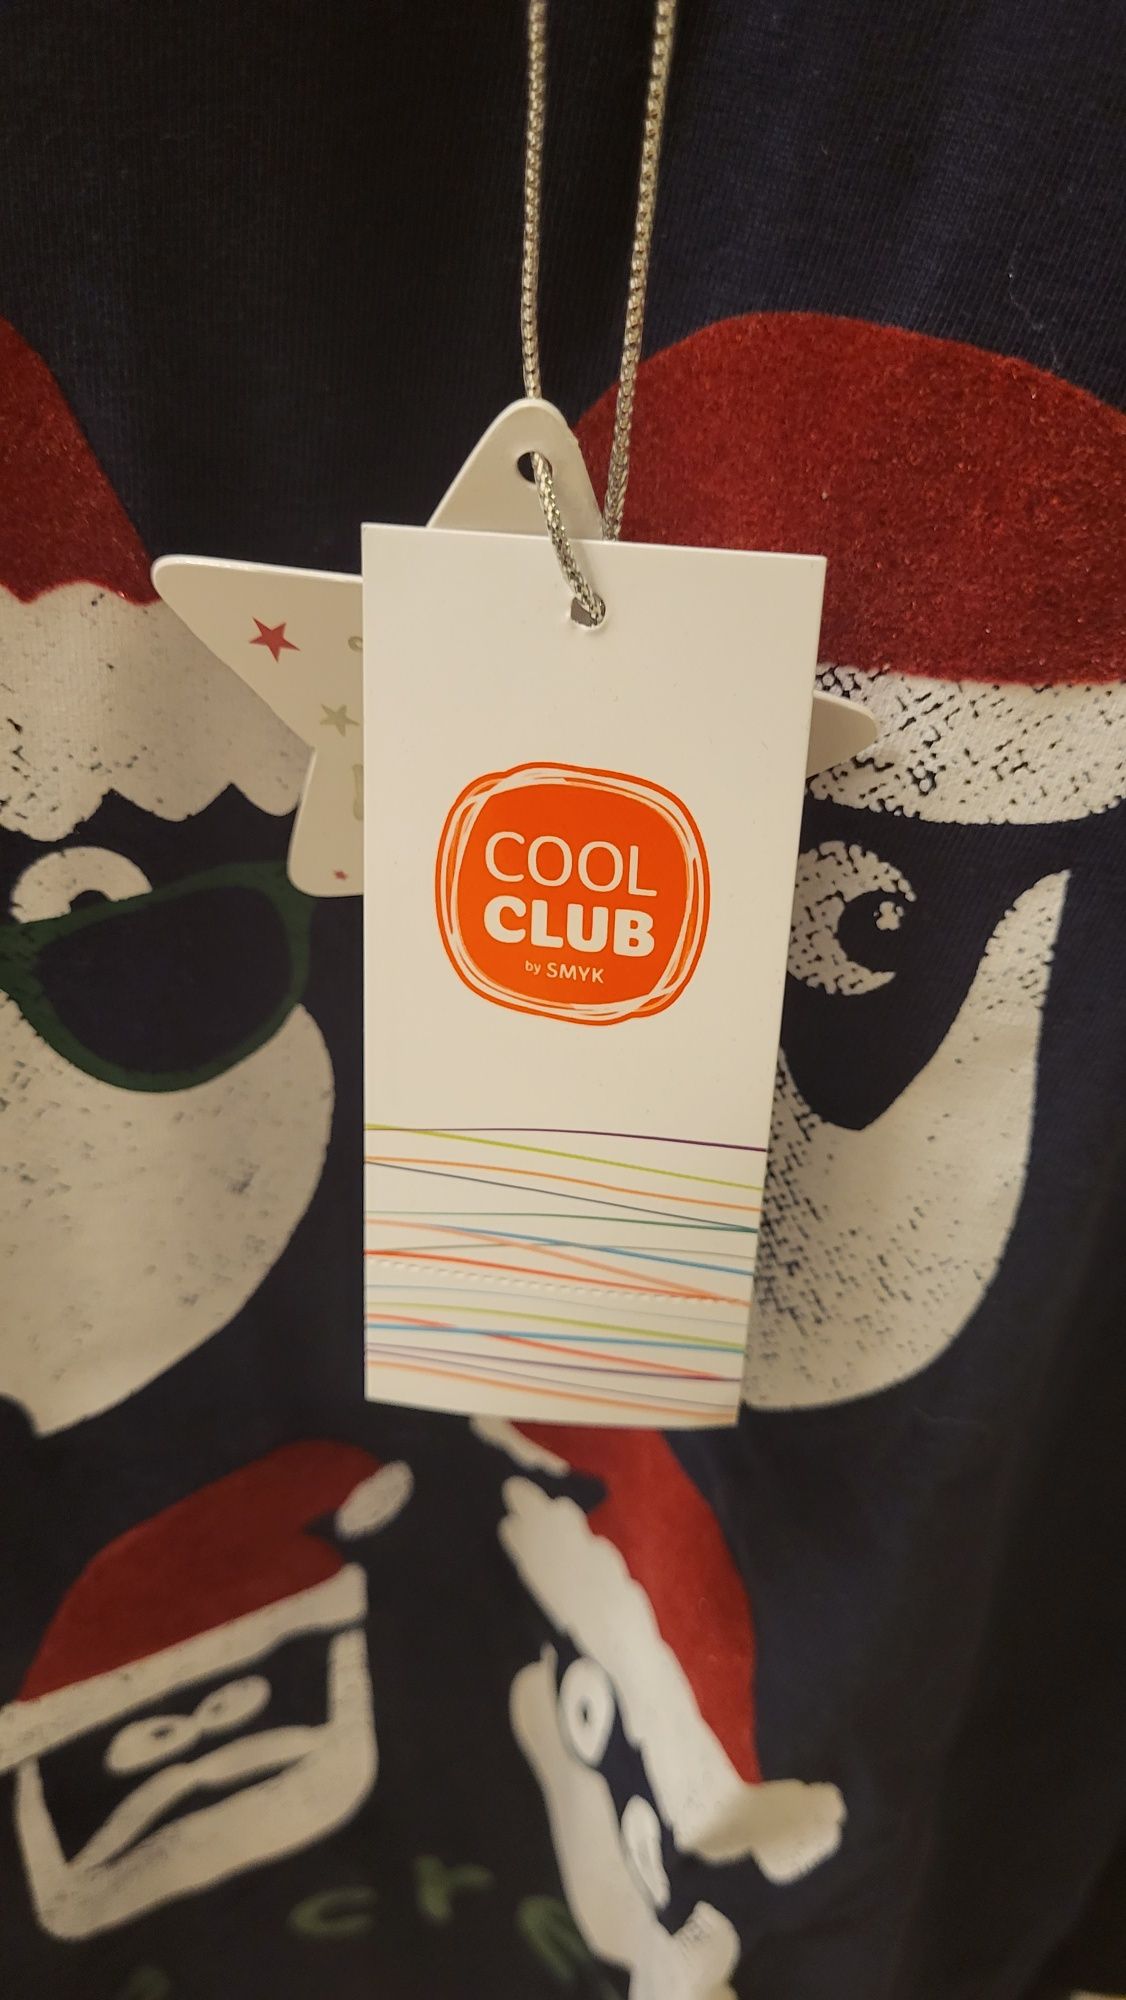 Bluza chłopięca Cool Club rozm. 152 cm, w Mikołaje, nieużywana